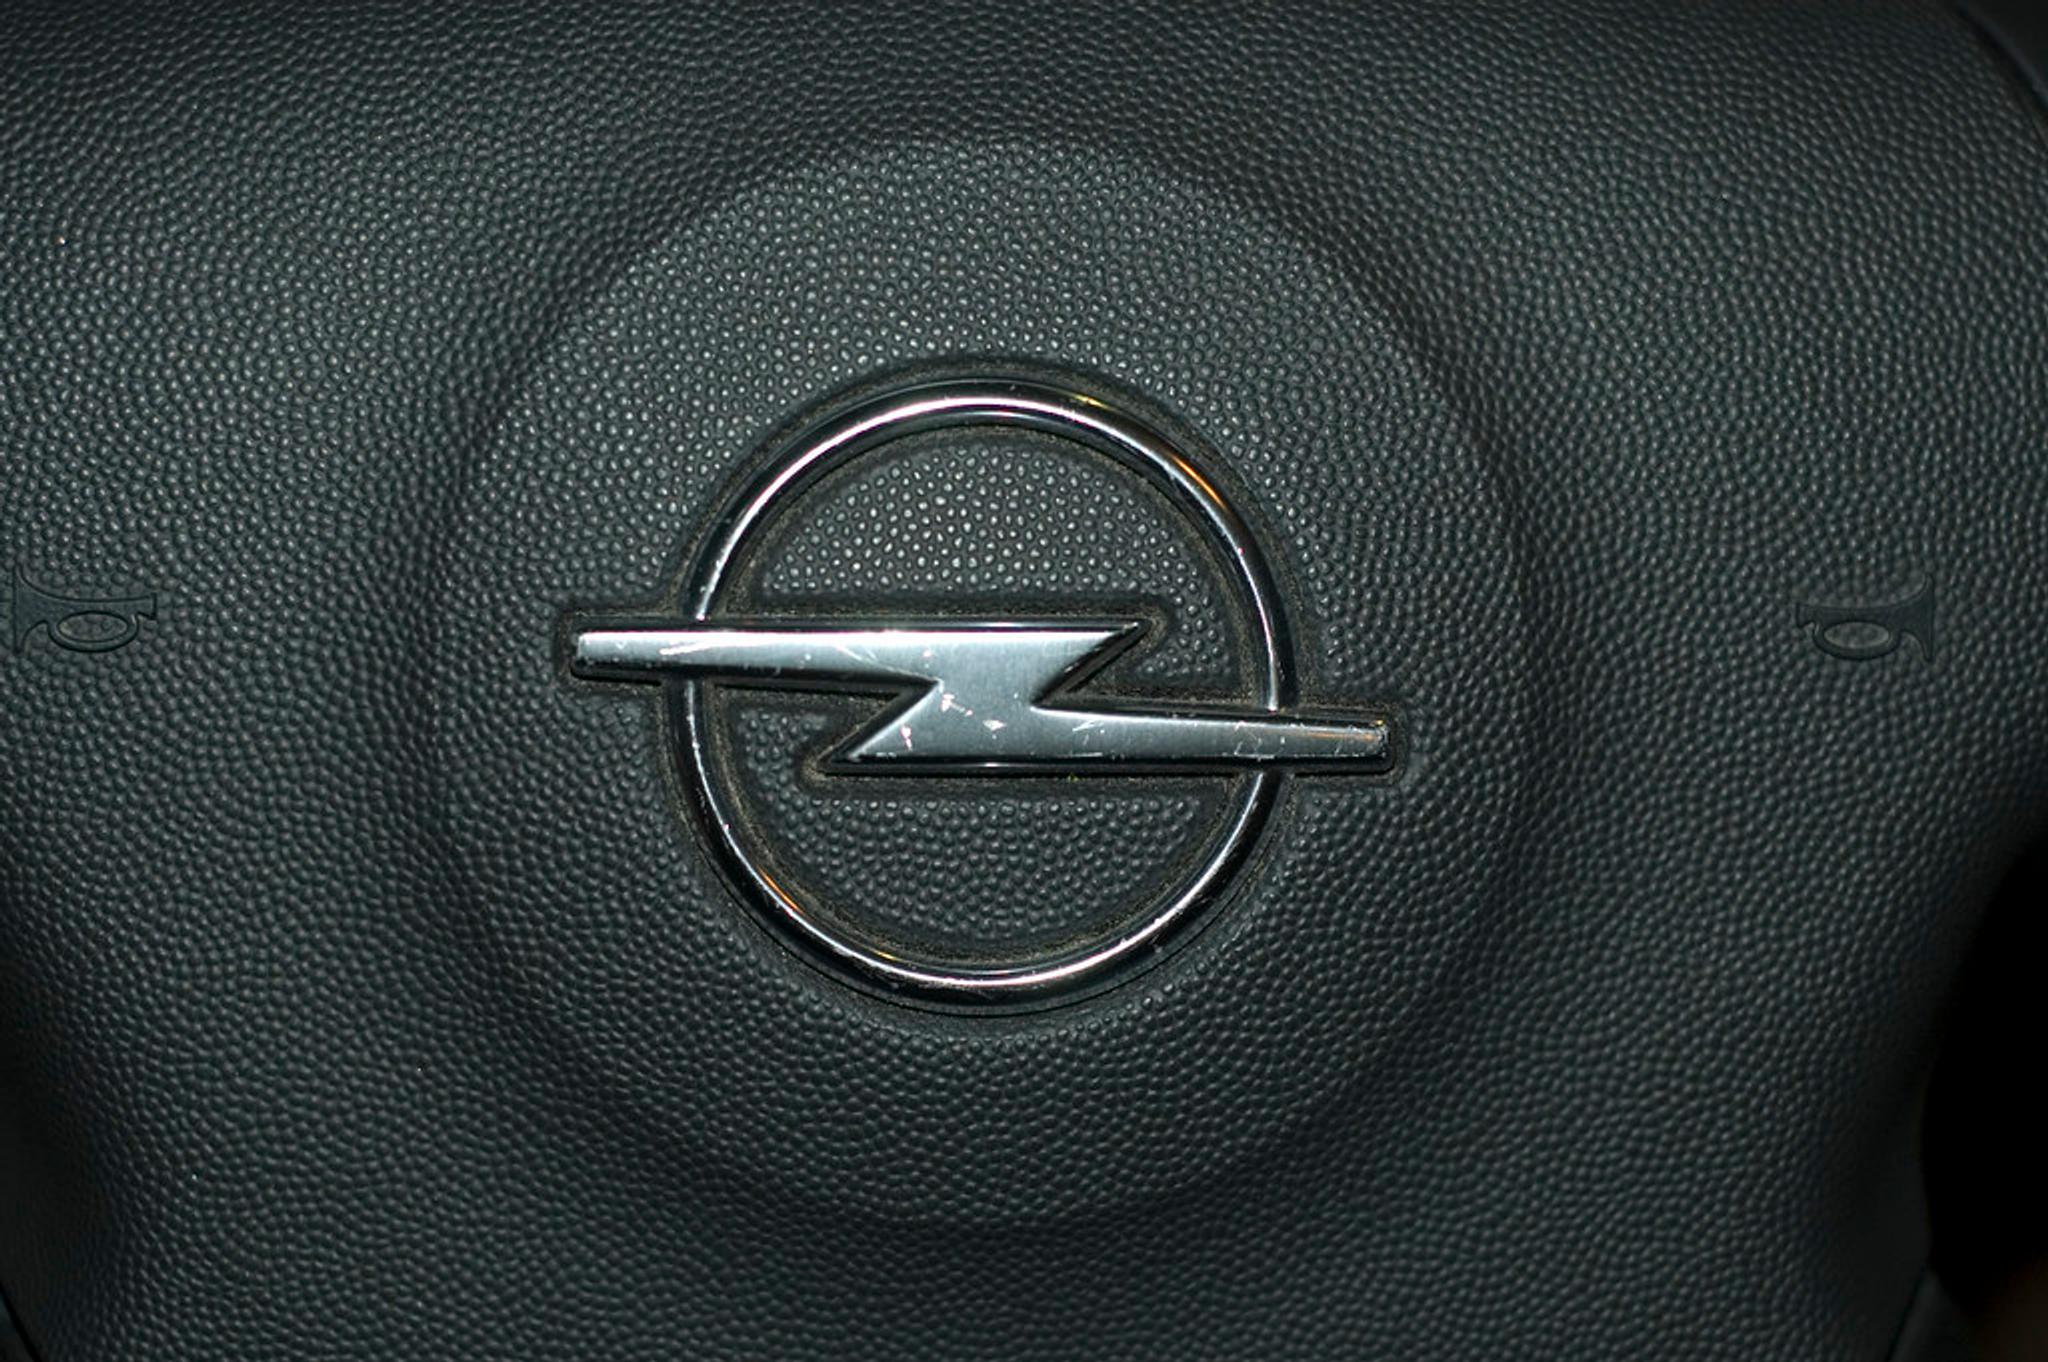 Opel badging on a steering wheel